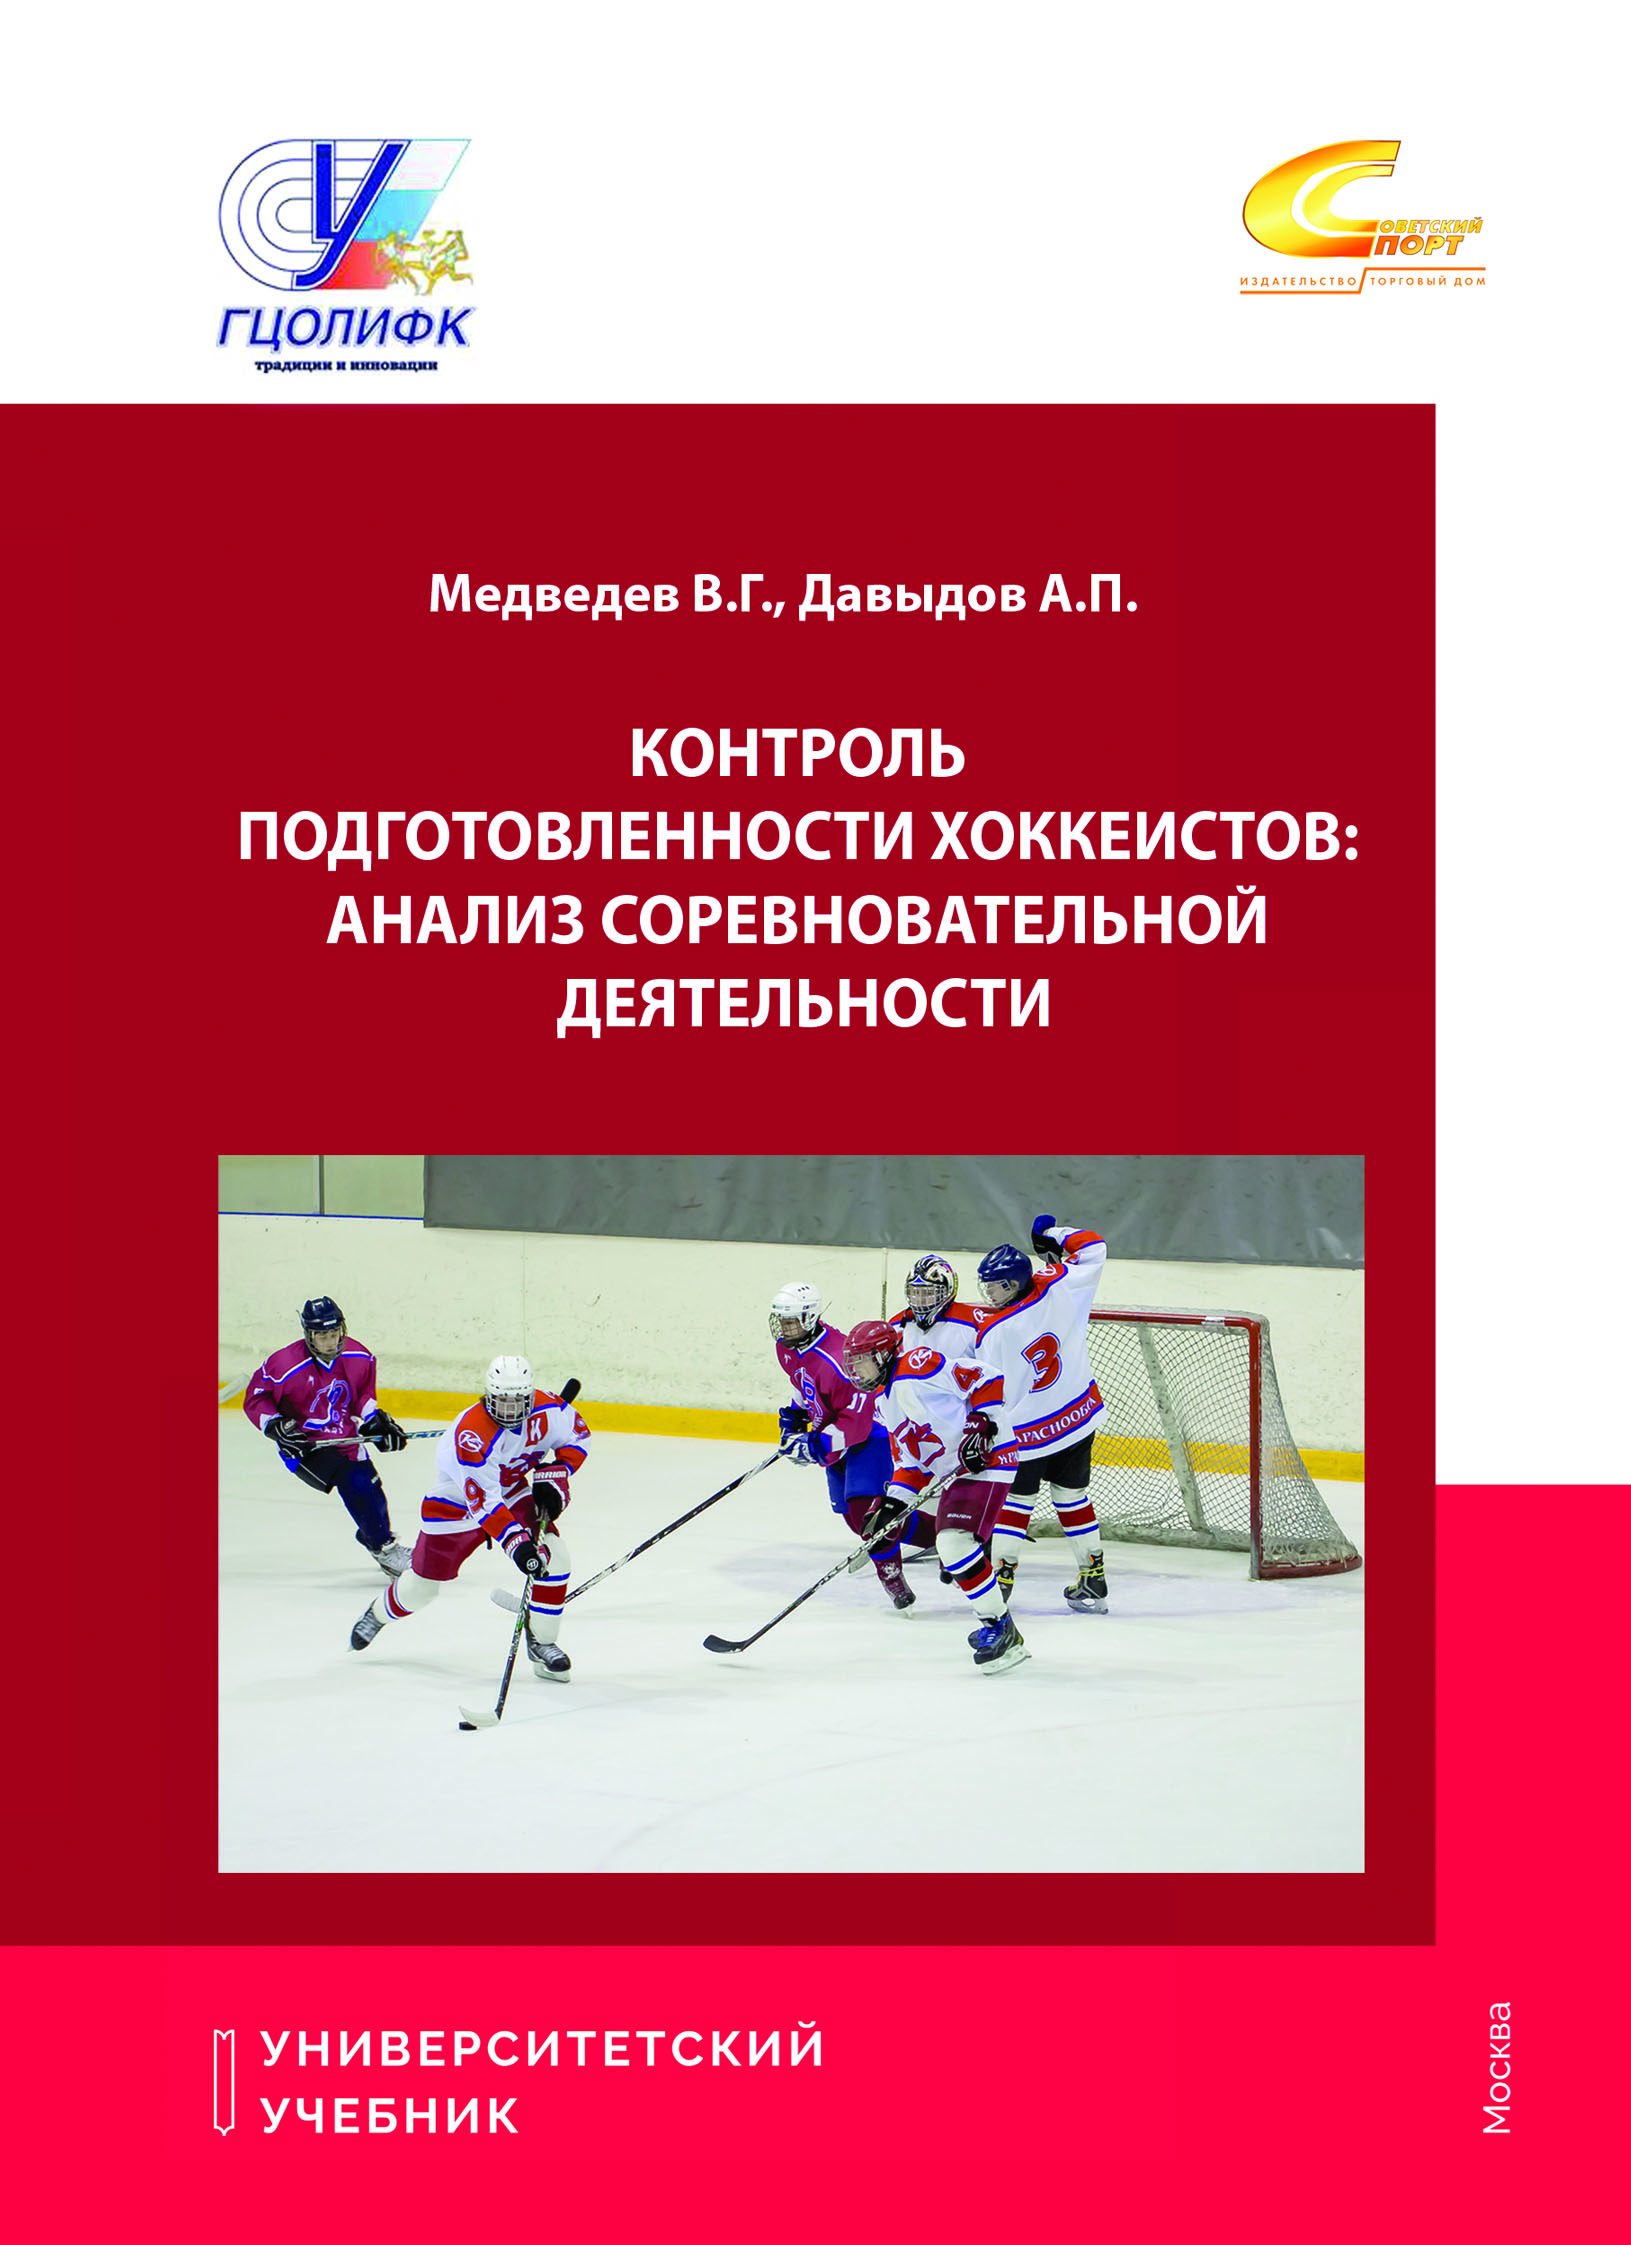 Контроль подготовленности хоккеистов: Анализ соревновательной деятельности